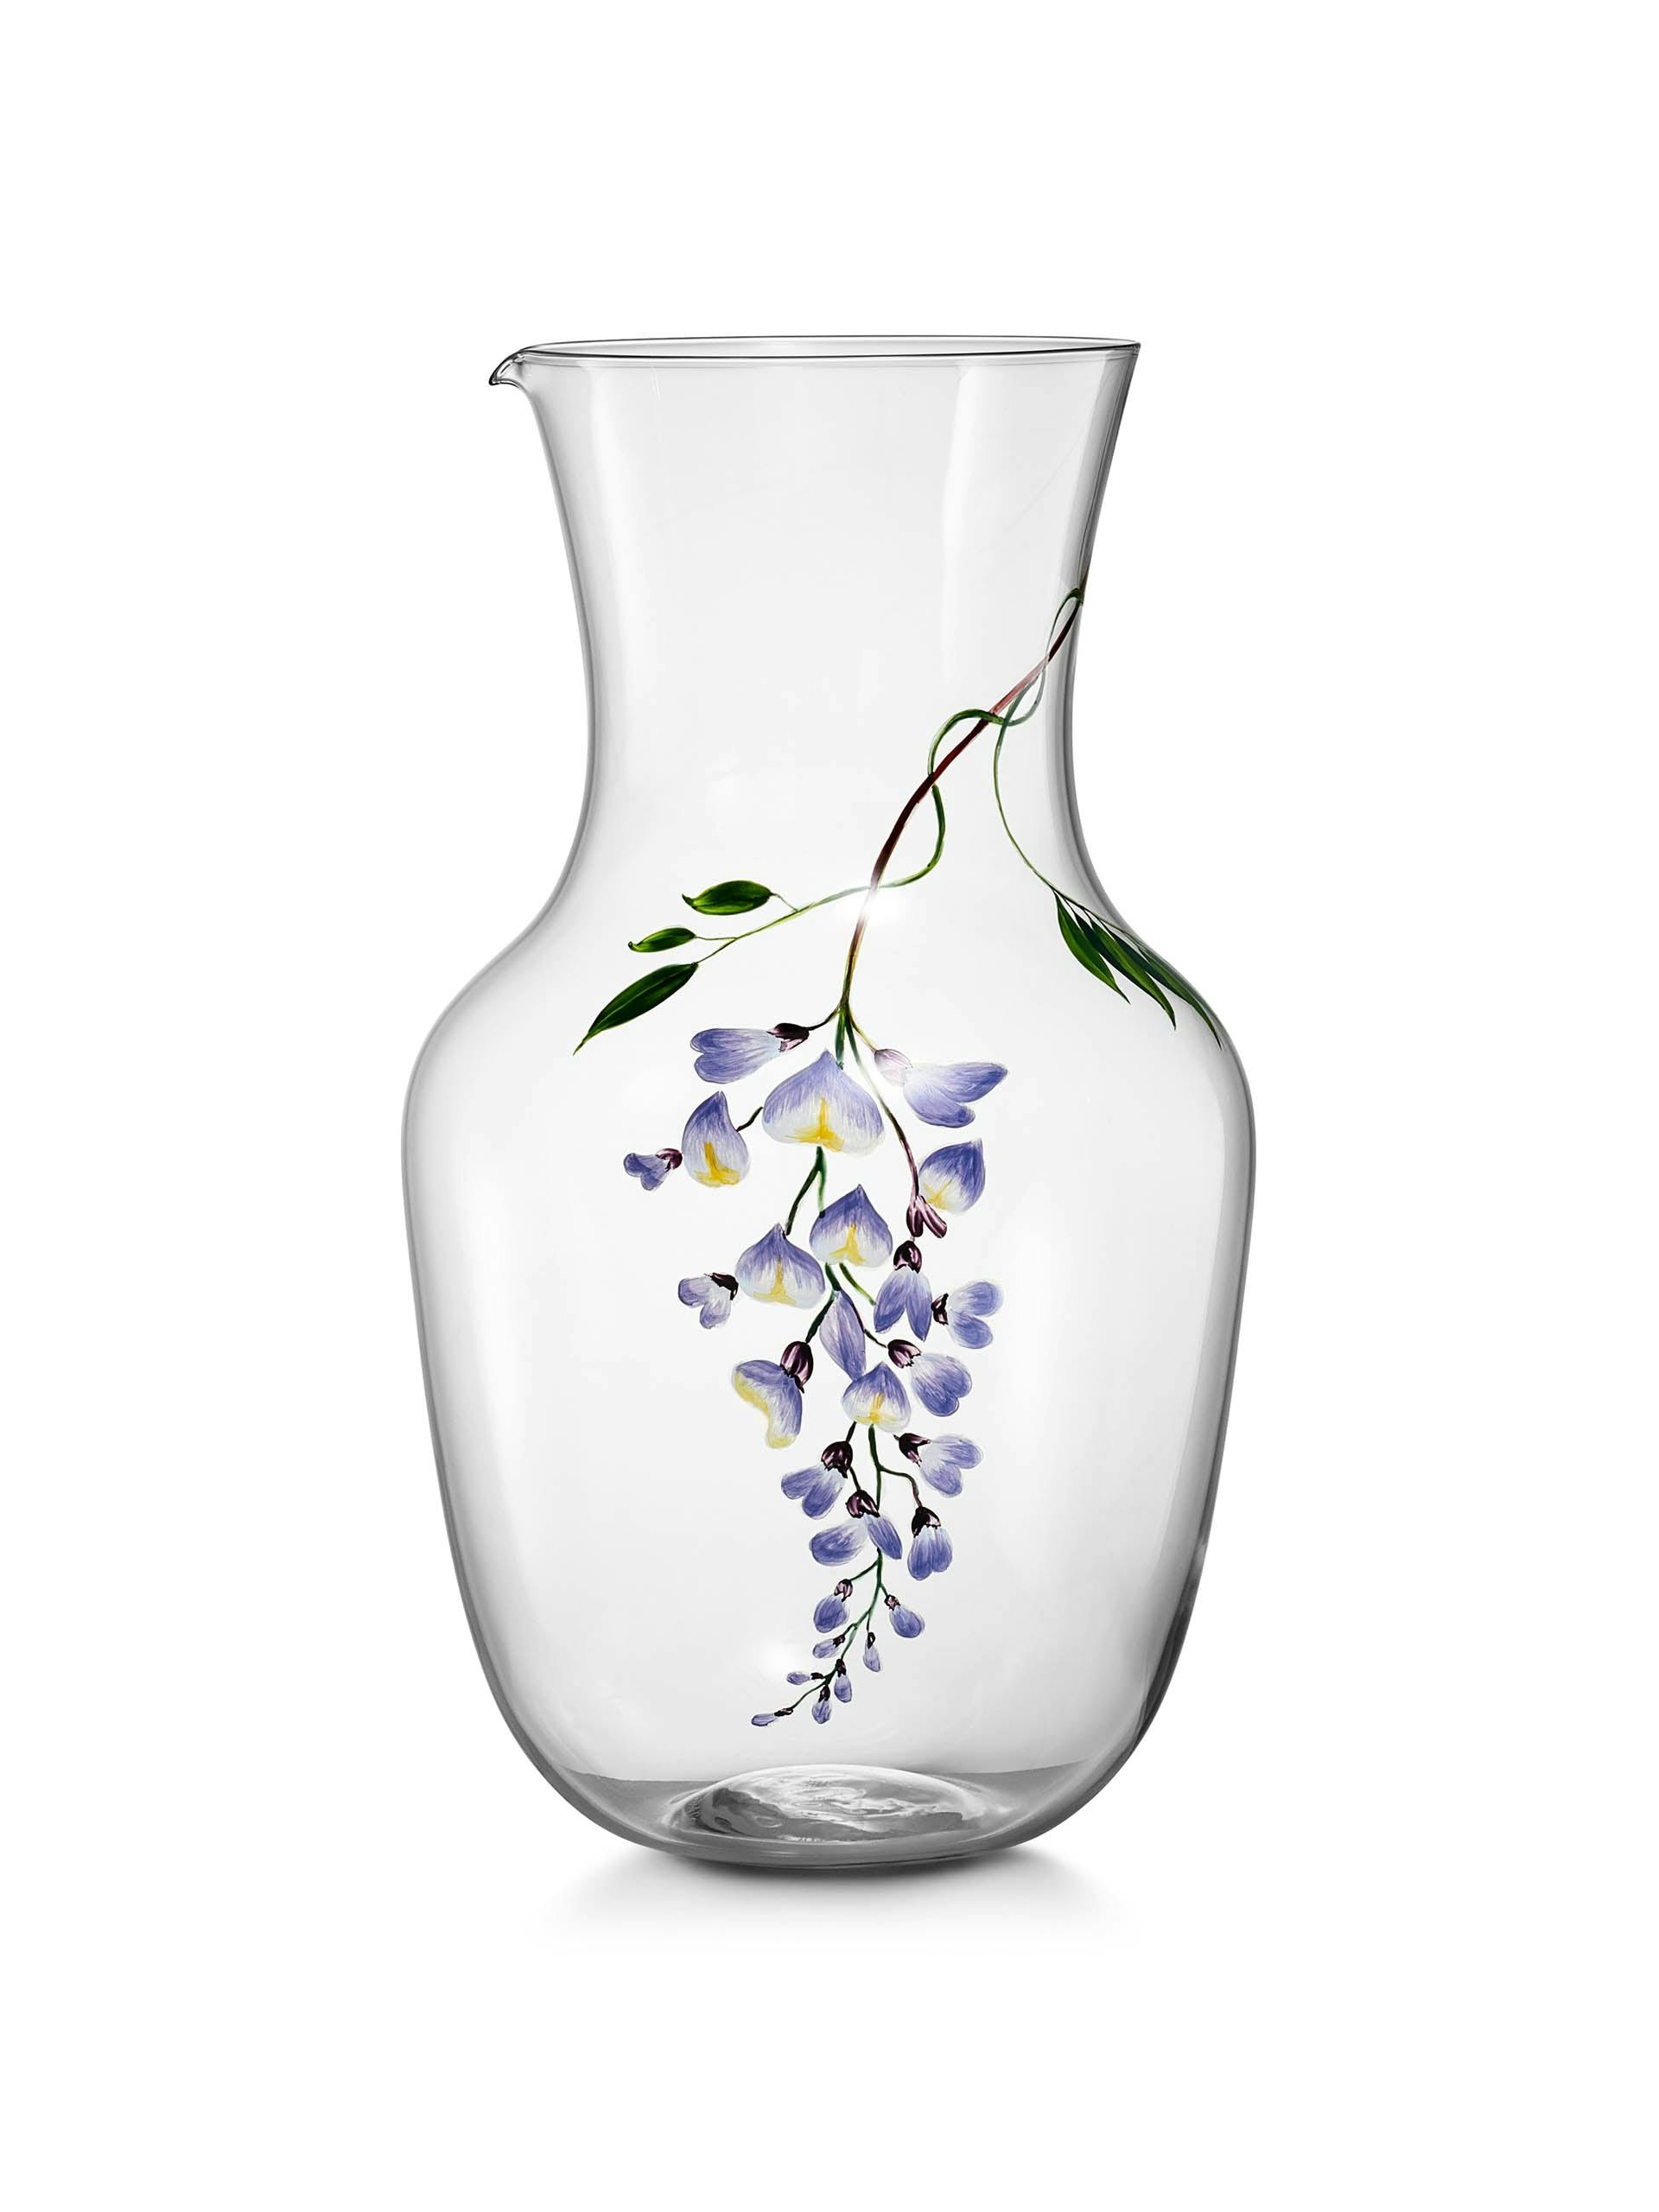 Wisteria glass pitcher